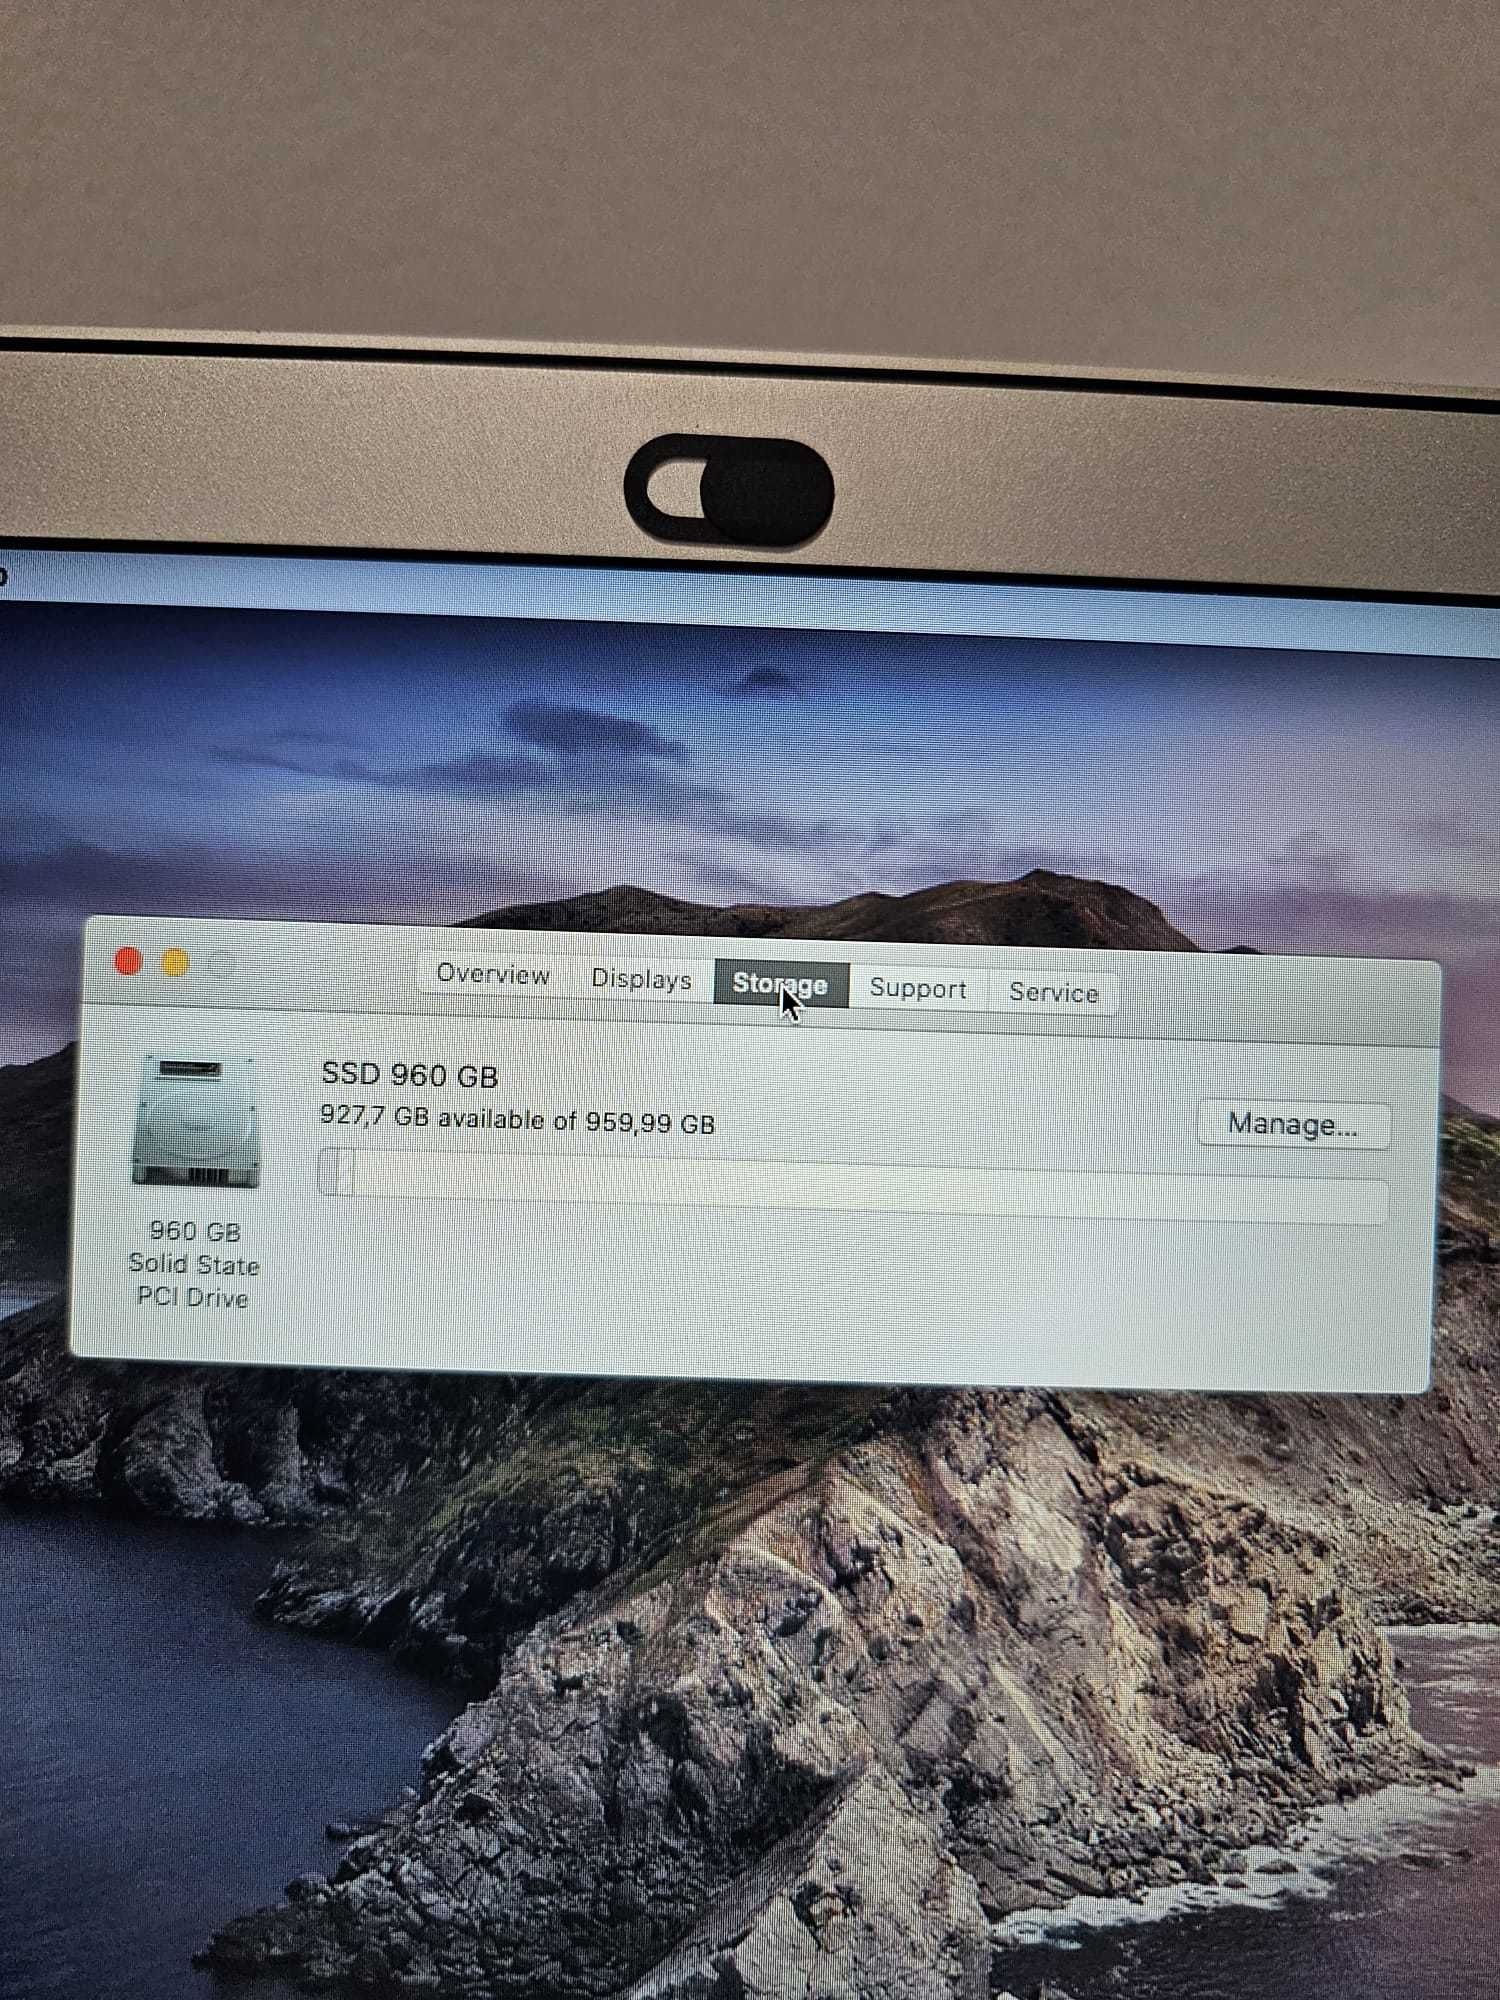 Macbook Air 13 2017, i5 1.8 GHz, 8GB RAM, 960GB SSD, fabricat in 2019